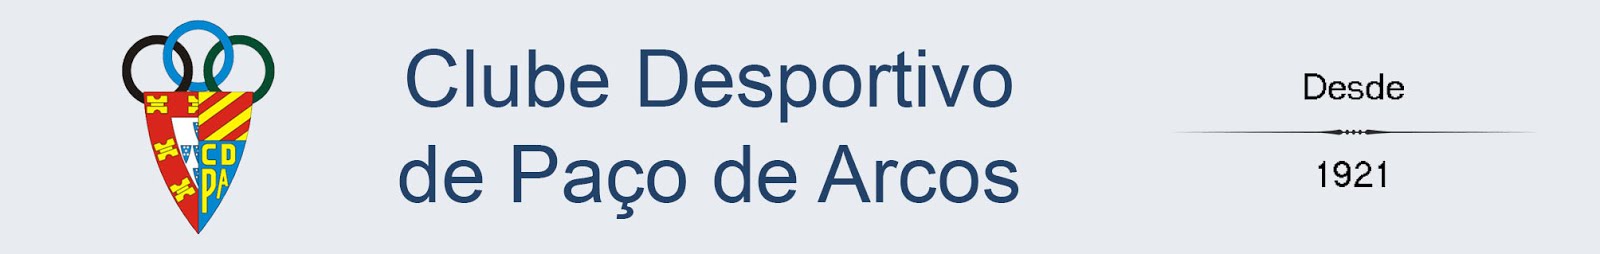 CDPA: Site Oficial do Clube Desportivo de Paço de Arcos